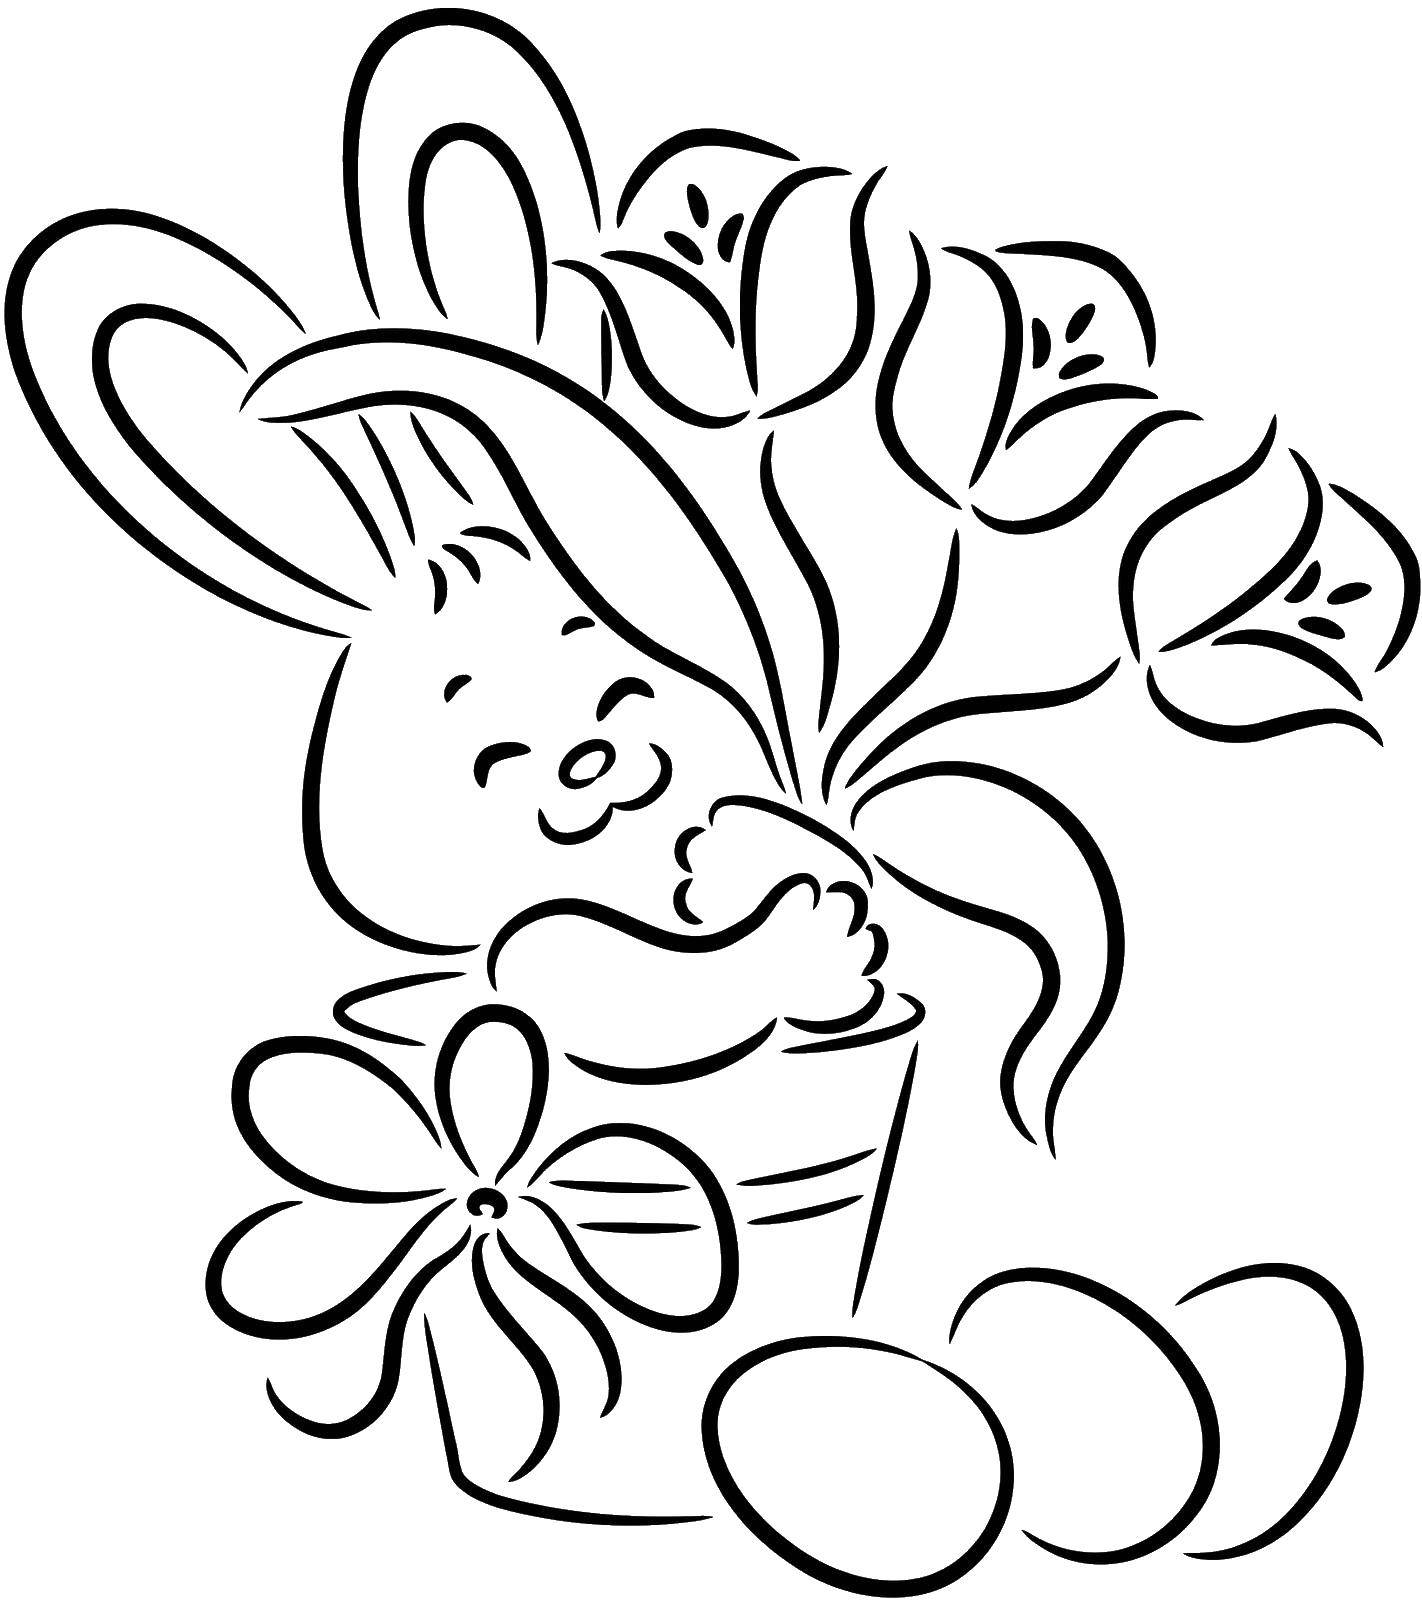 Розмальовки  Заєць з квітами та яйцями. Завантажити розмальовку Великдень, свято, яйця, кролик.  Роздрукувати ,великдень,